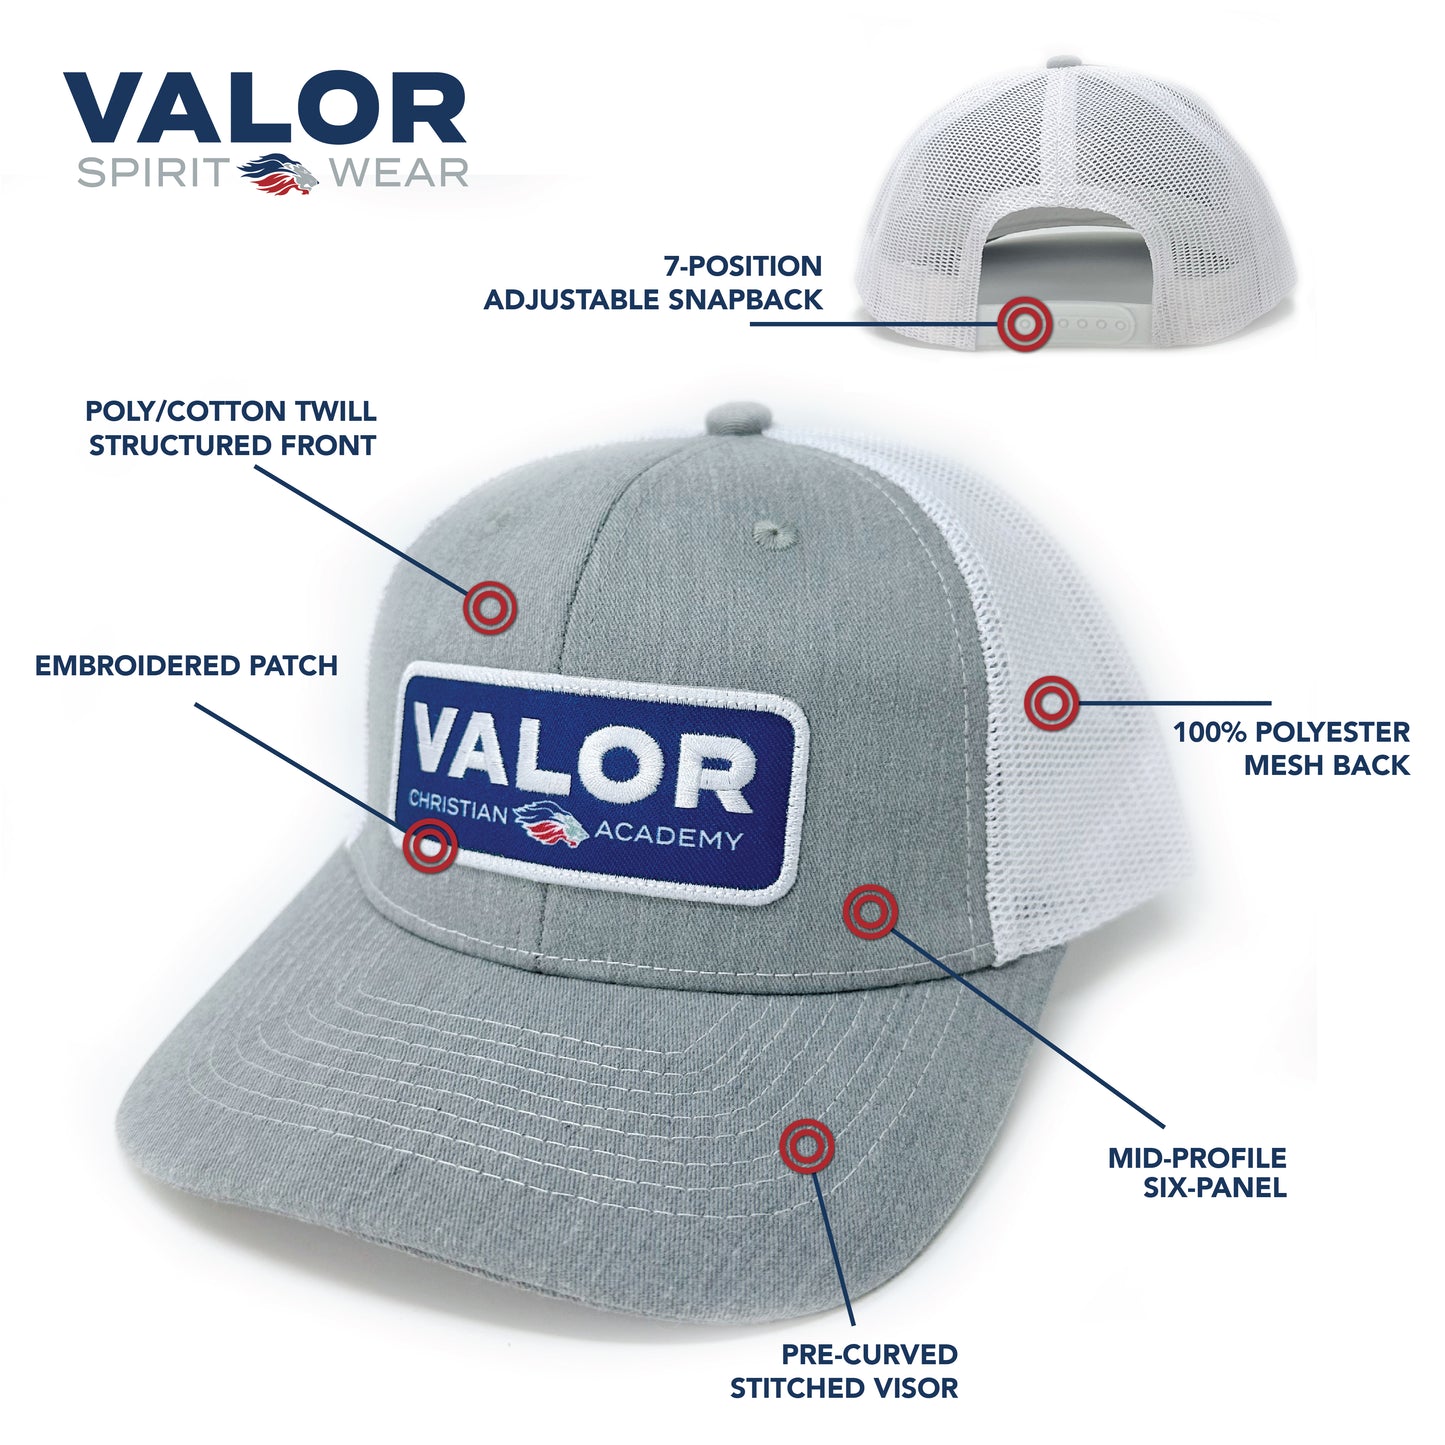 Simple Valor Patch Hat